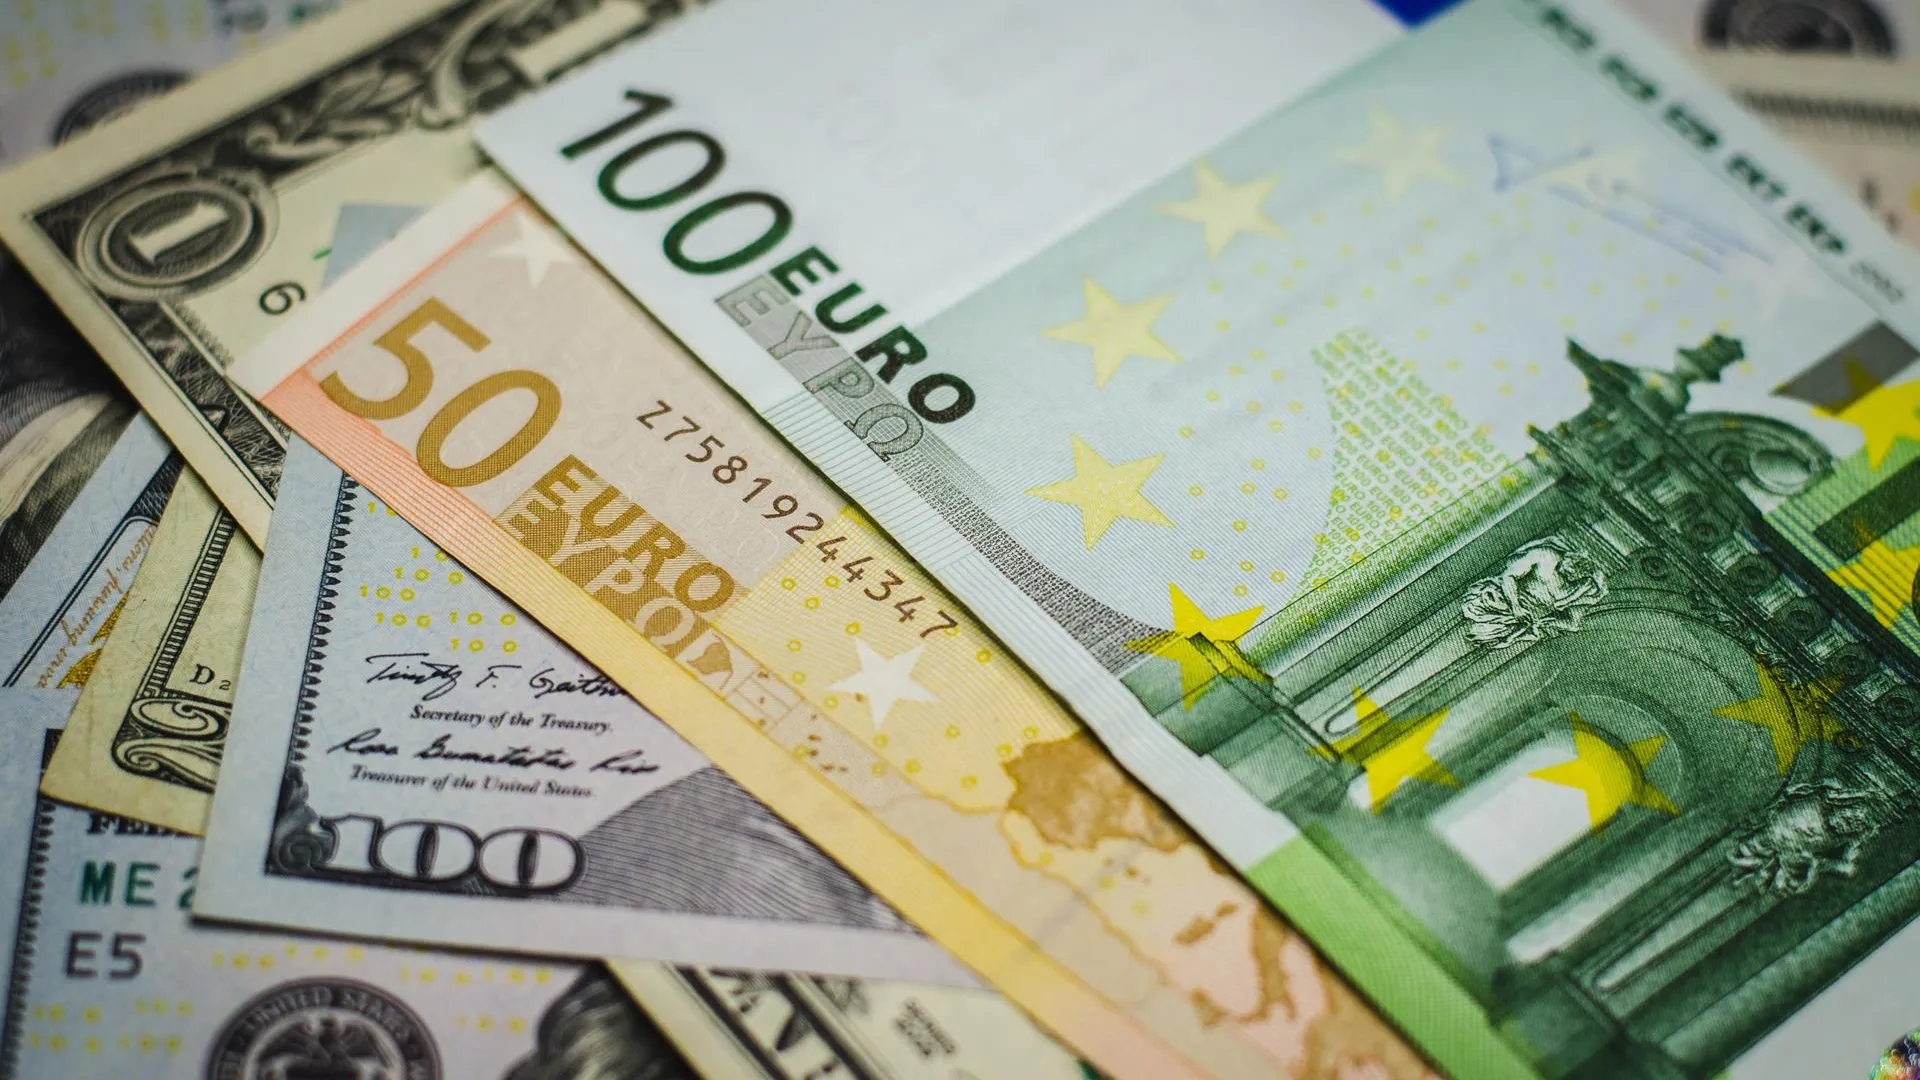 Инвестстратег Бахтин рассказал, стоит ли покупать валюту в марте